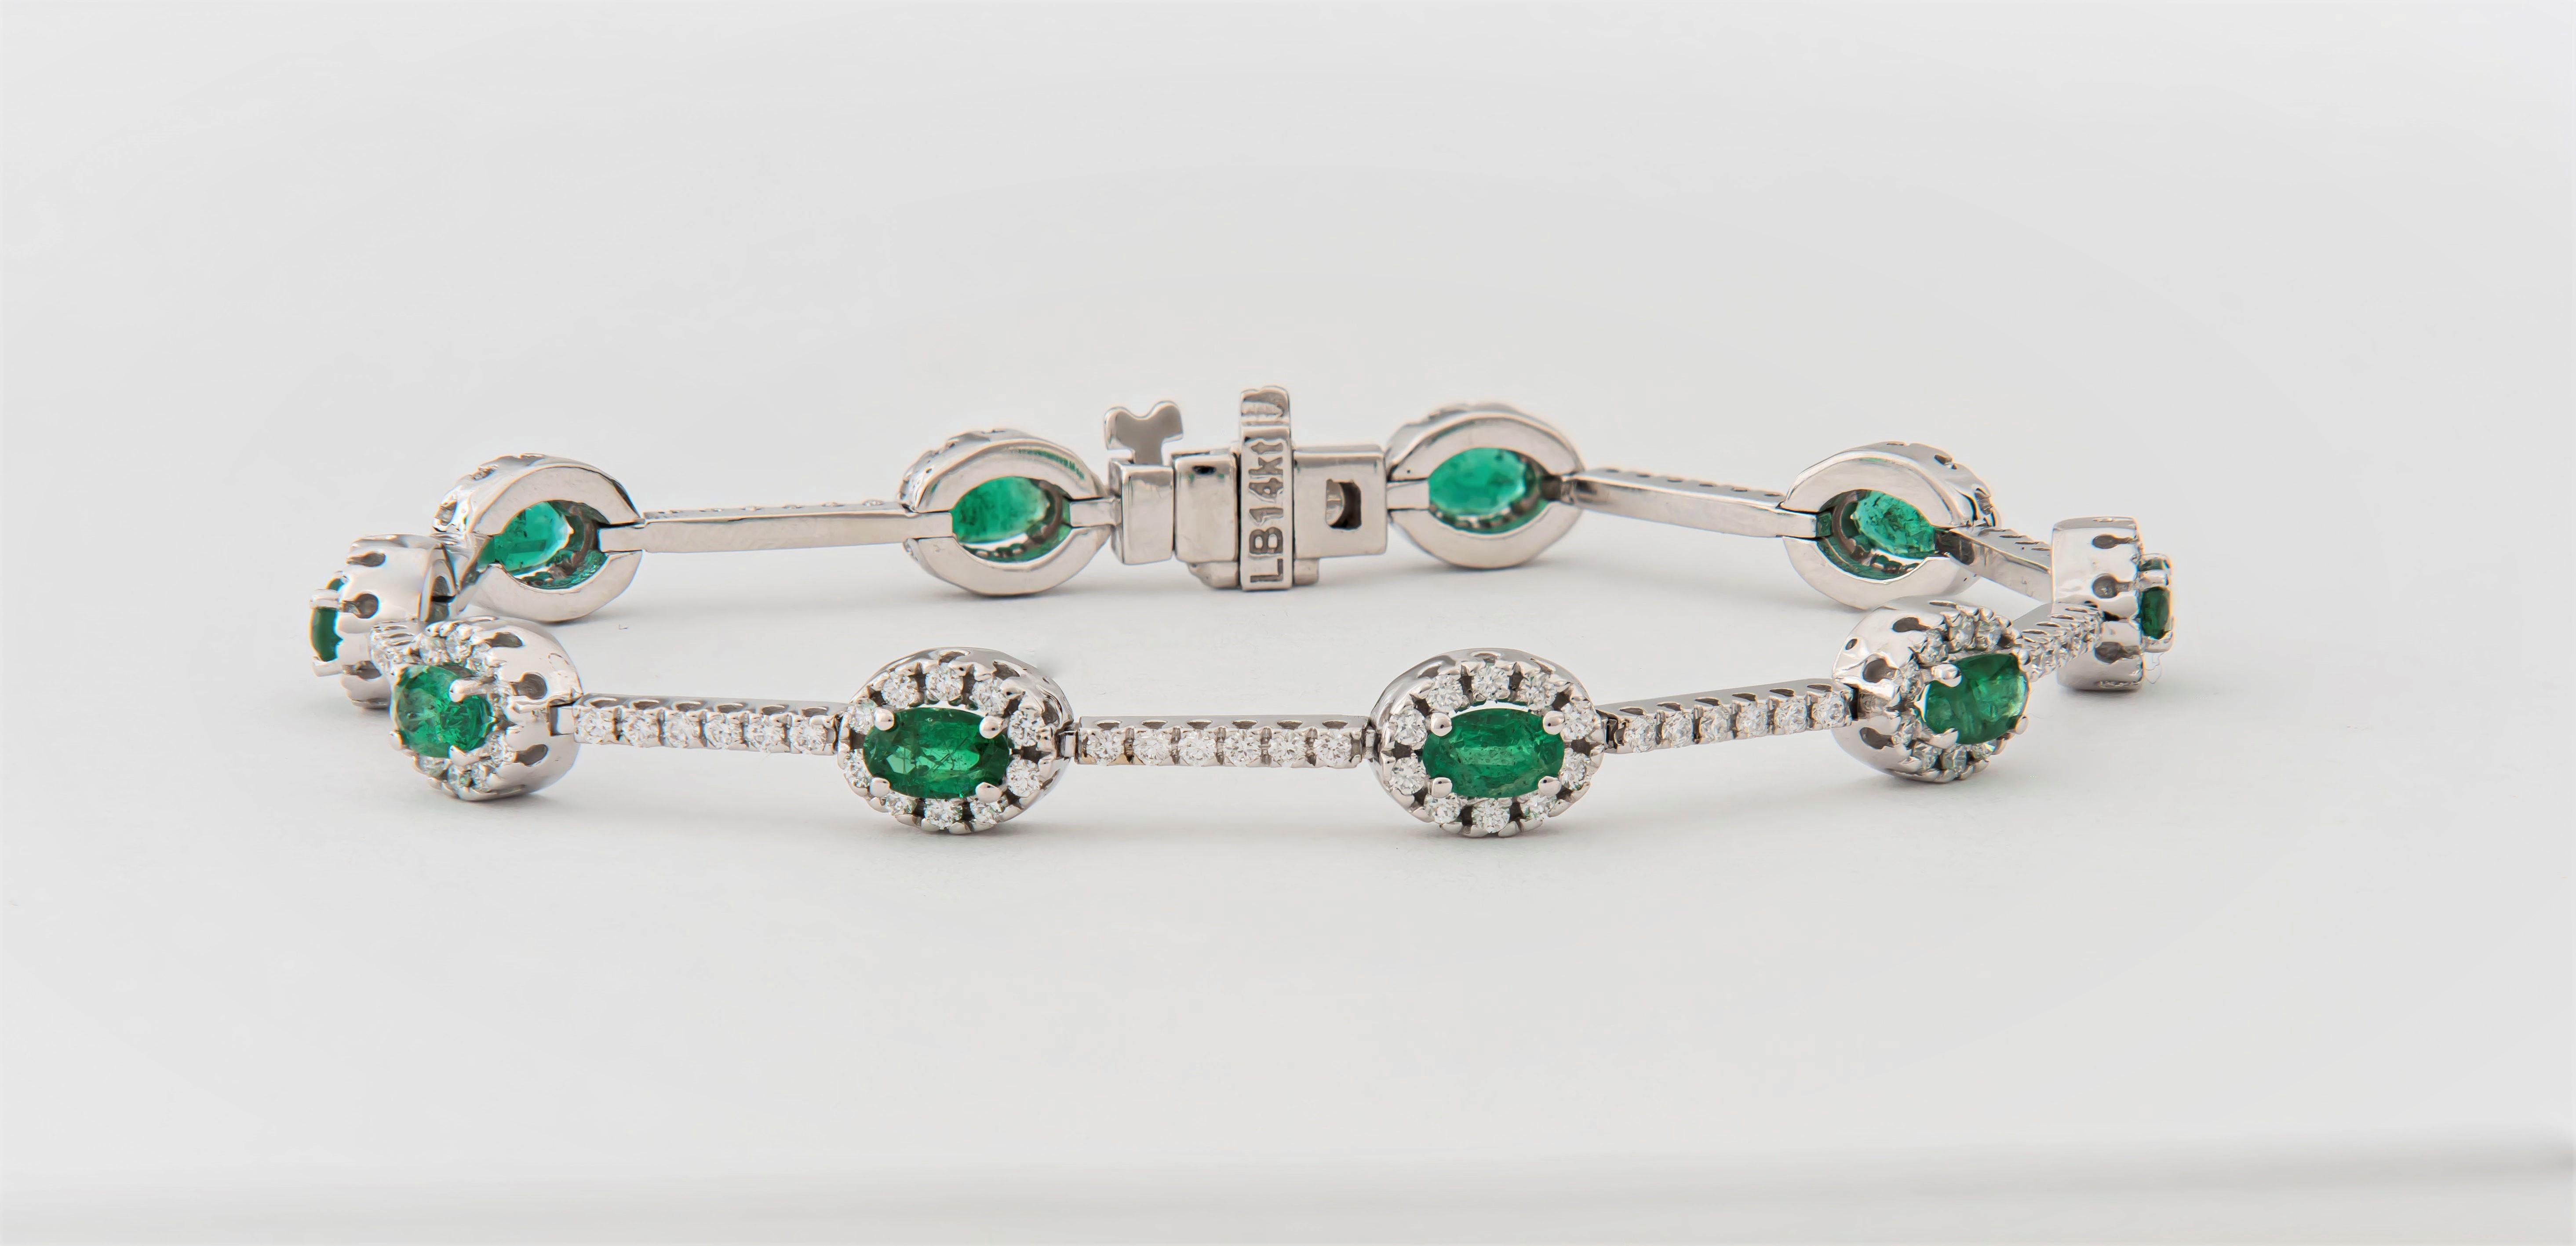 Oval Cut 2.20 Carat Oval Emerald and 1.37 Carat Diamond Bracelet in 14 Karat Gold